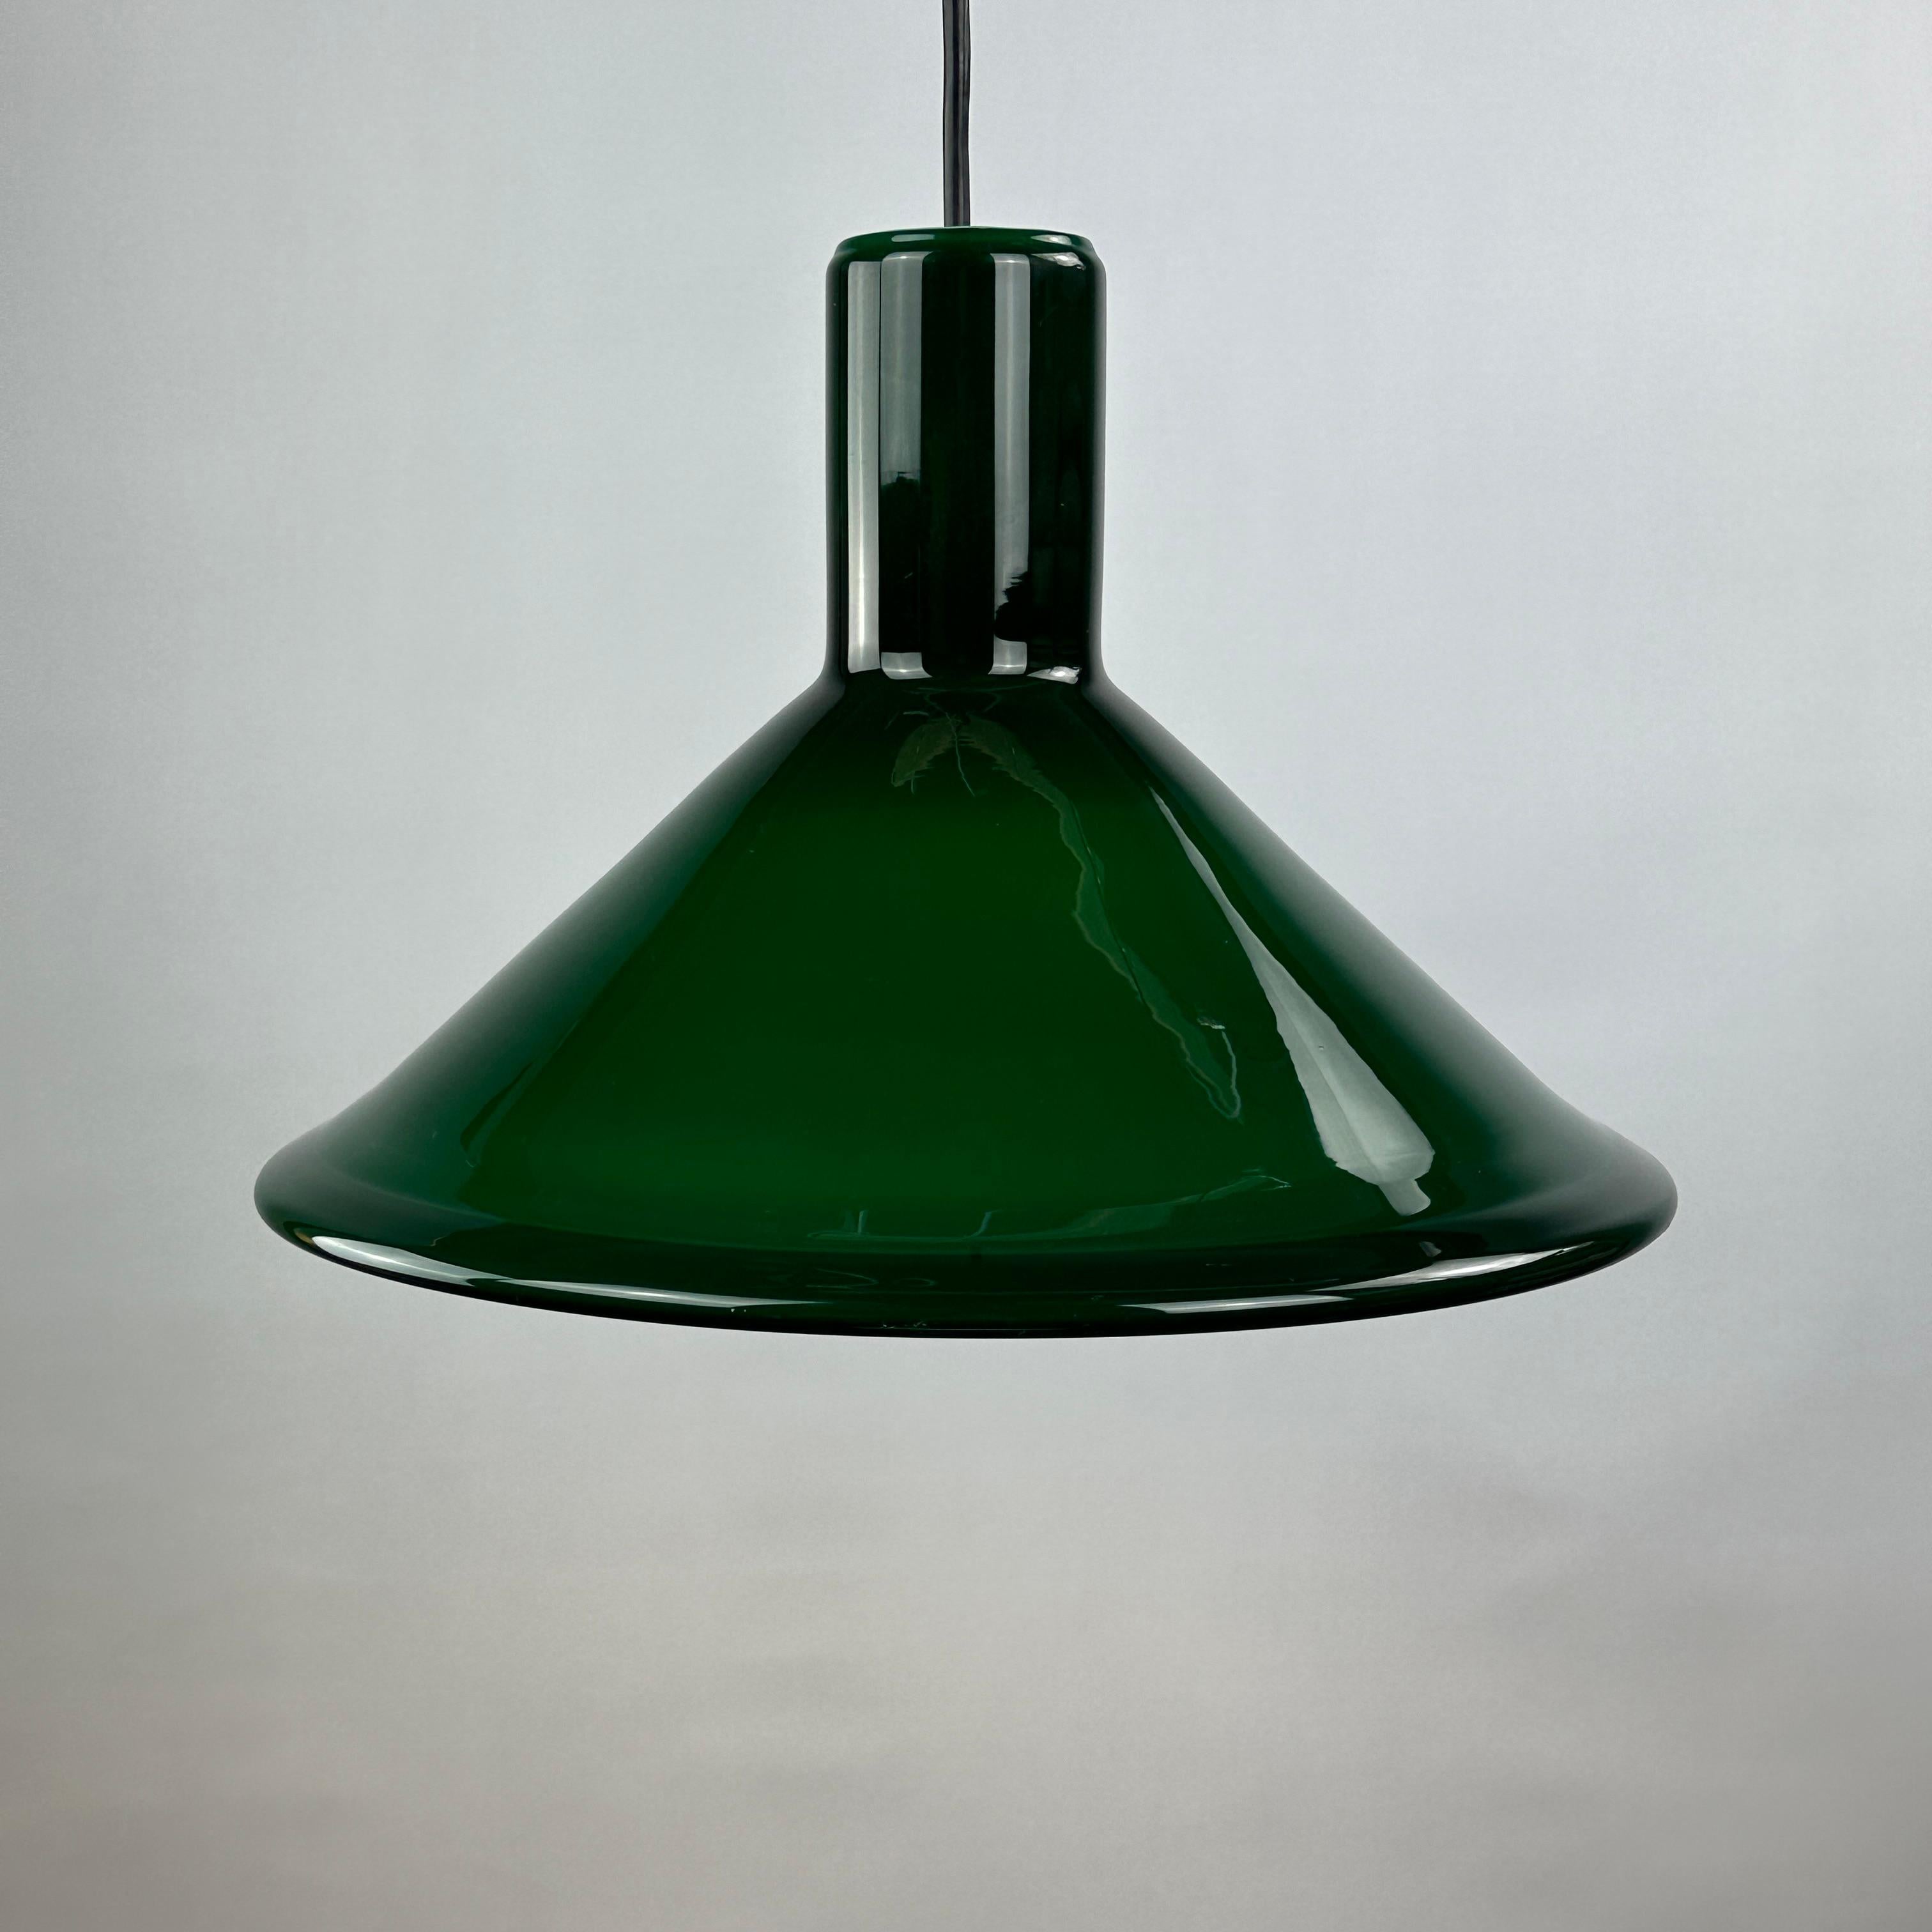 Coole und stilvolle grüne Pendelleuchte aus dickem Glas vom dänischen Michael Bang für Holmegaard. Dieses Modell heißt P & T PENDEL und wurde 1972 entworfen.

Hochwertiges dickes Opalglas, gibt ein sehr angenehmes Licht. Holmegaard spezialisierte